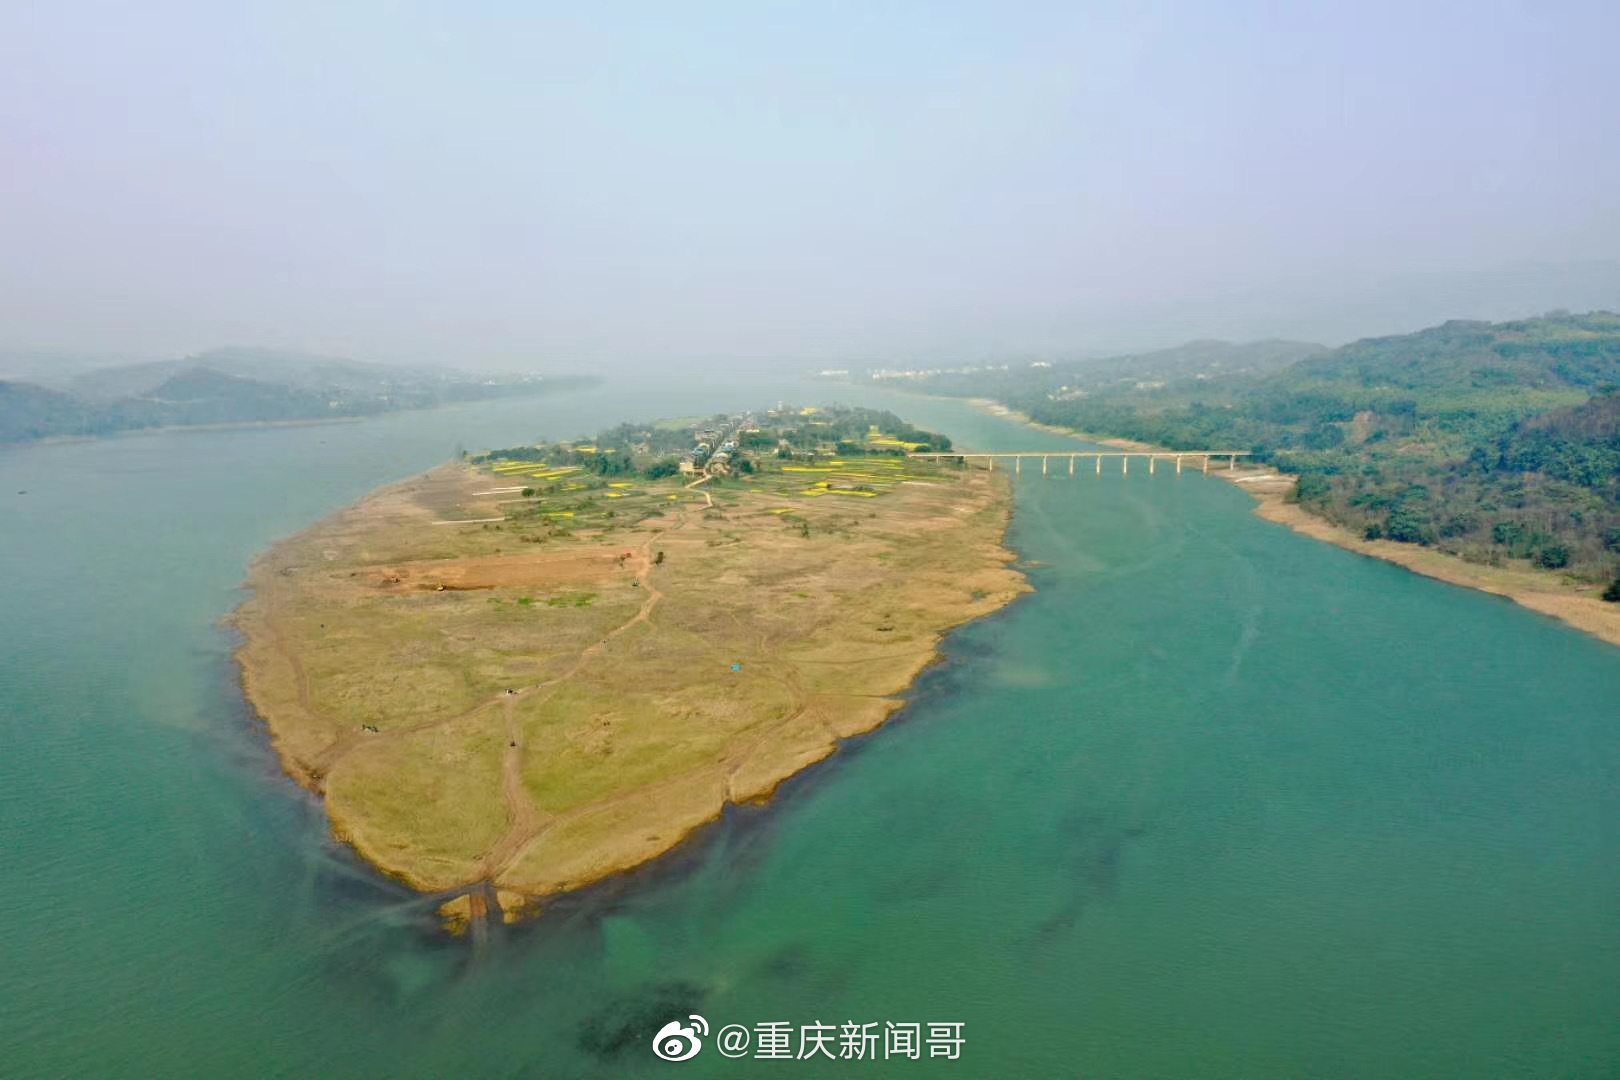 巴南区麻柳嘴镇,长江上的南平坝,又被称为重庆的呼伦贝尔